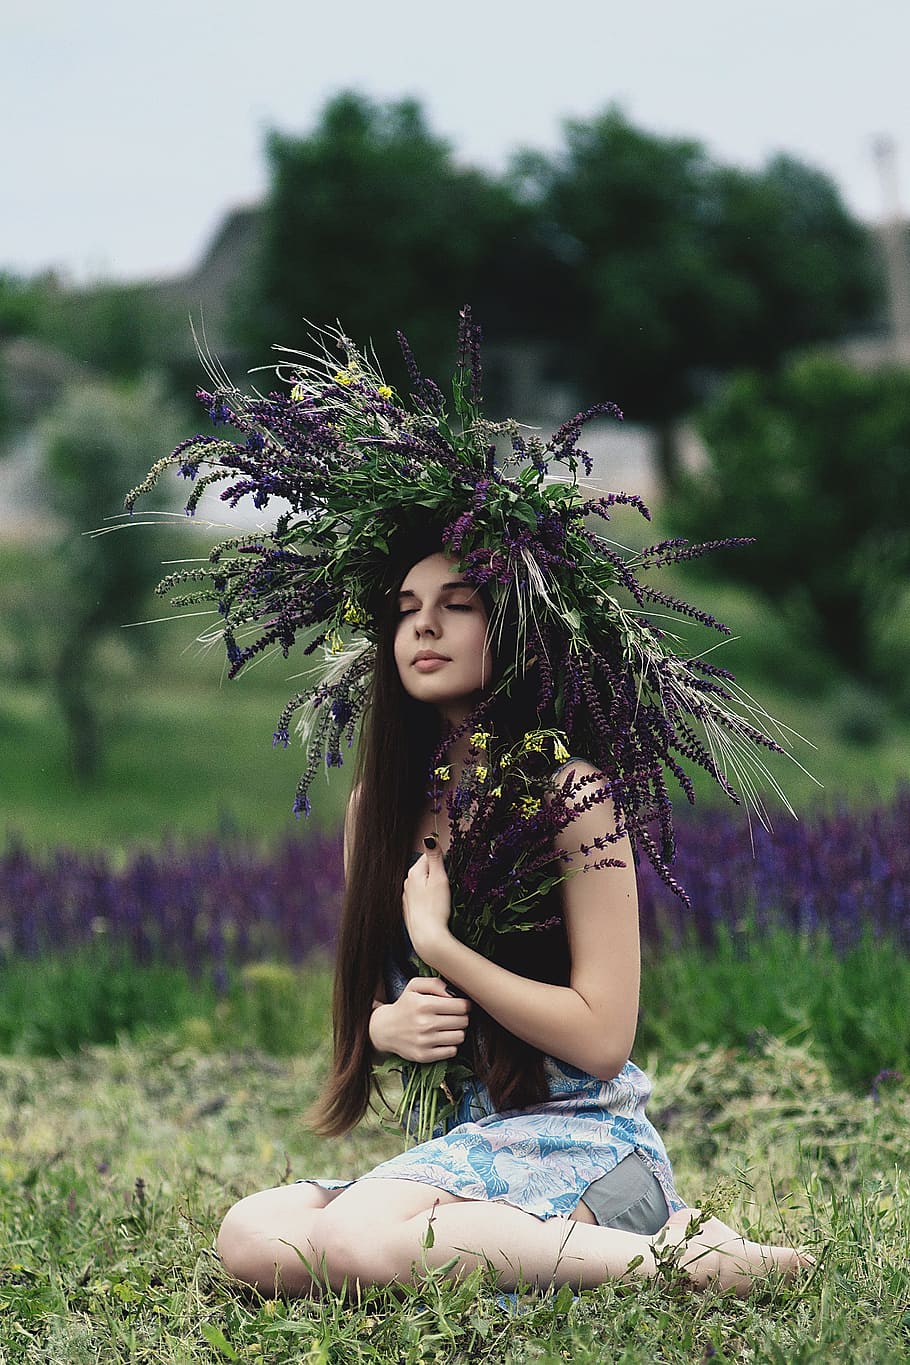 woman wearing lavender headdress sitting on grass, woman wearing black tank top near purple petaled flower